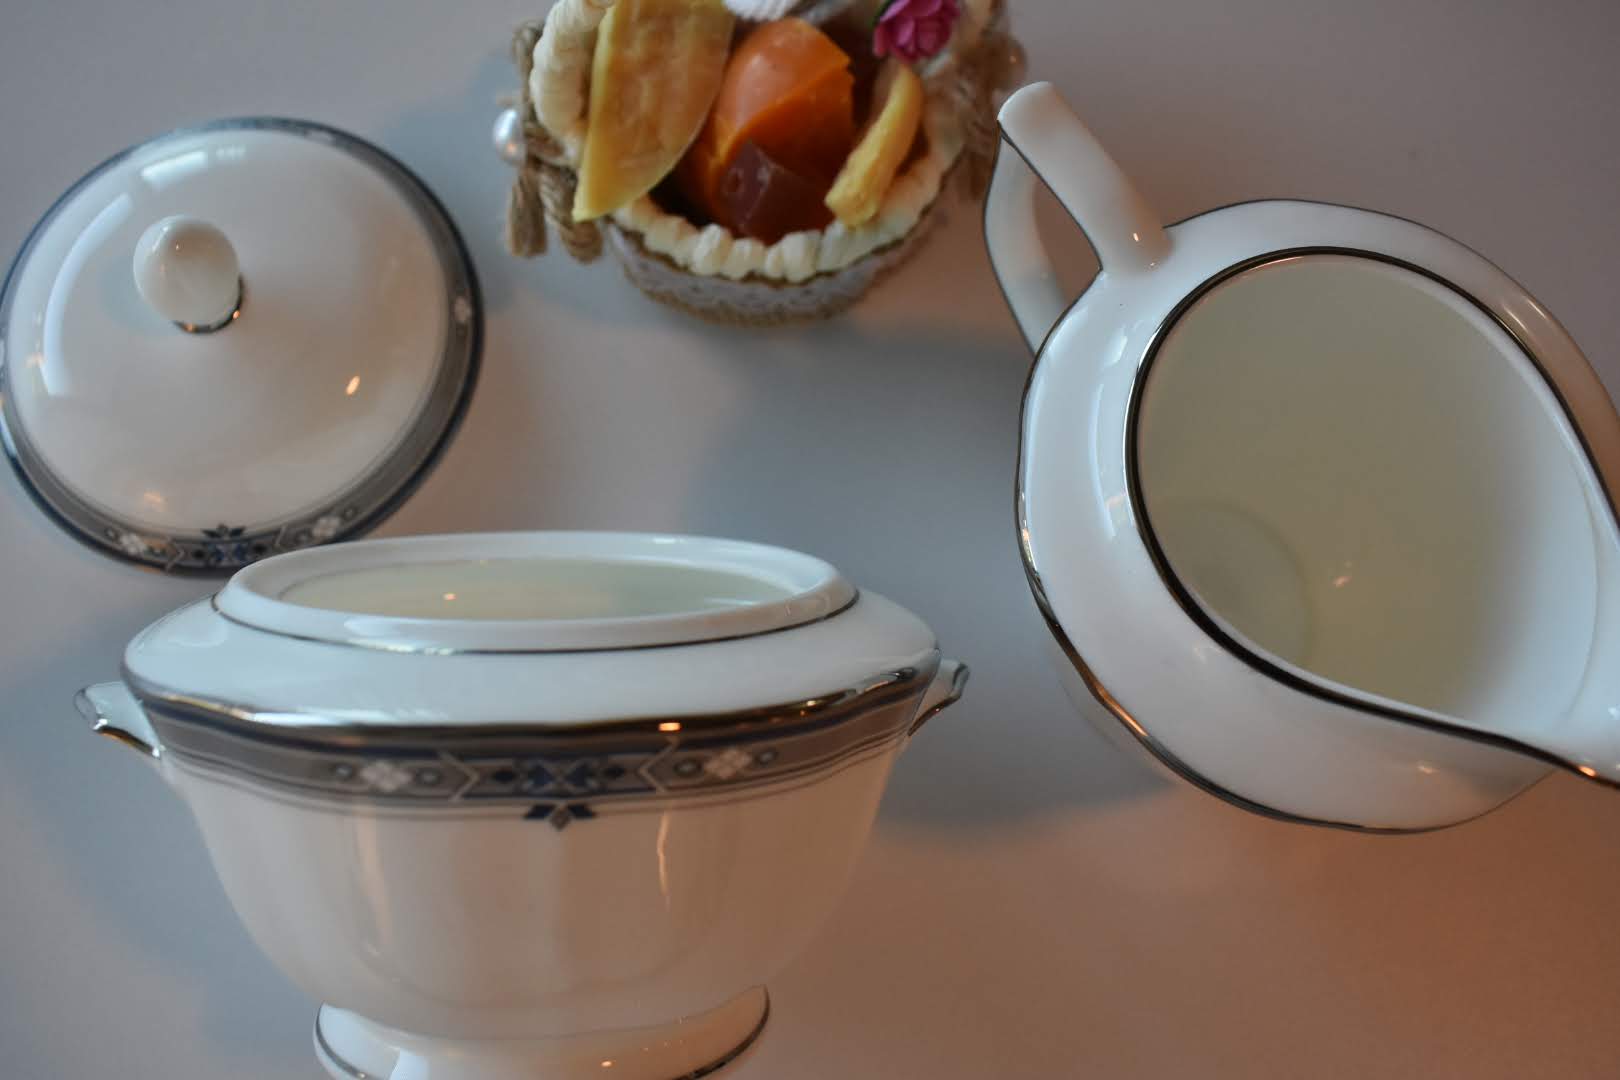 Mikasa - Porcelain Fine China - Blue and Platinum Trim - Sugar Bowl and Creamer Bowl